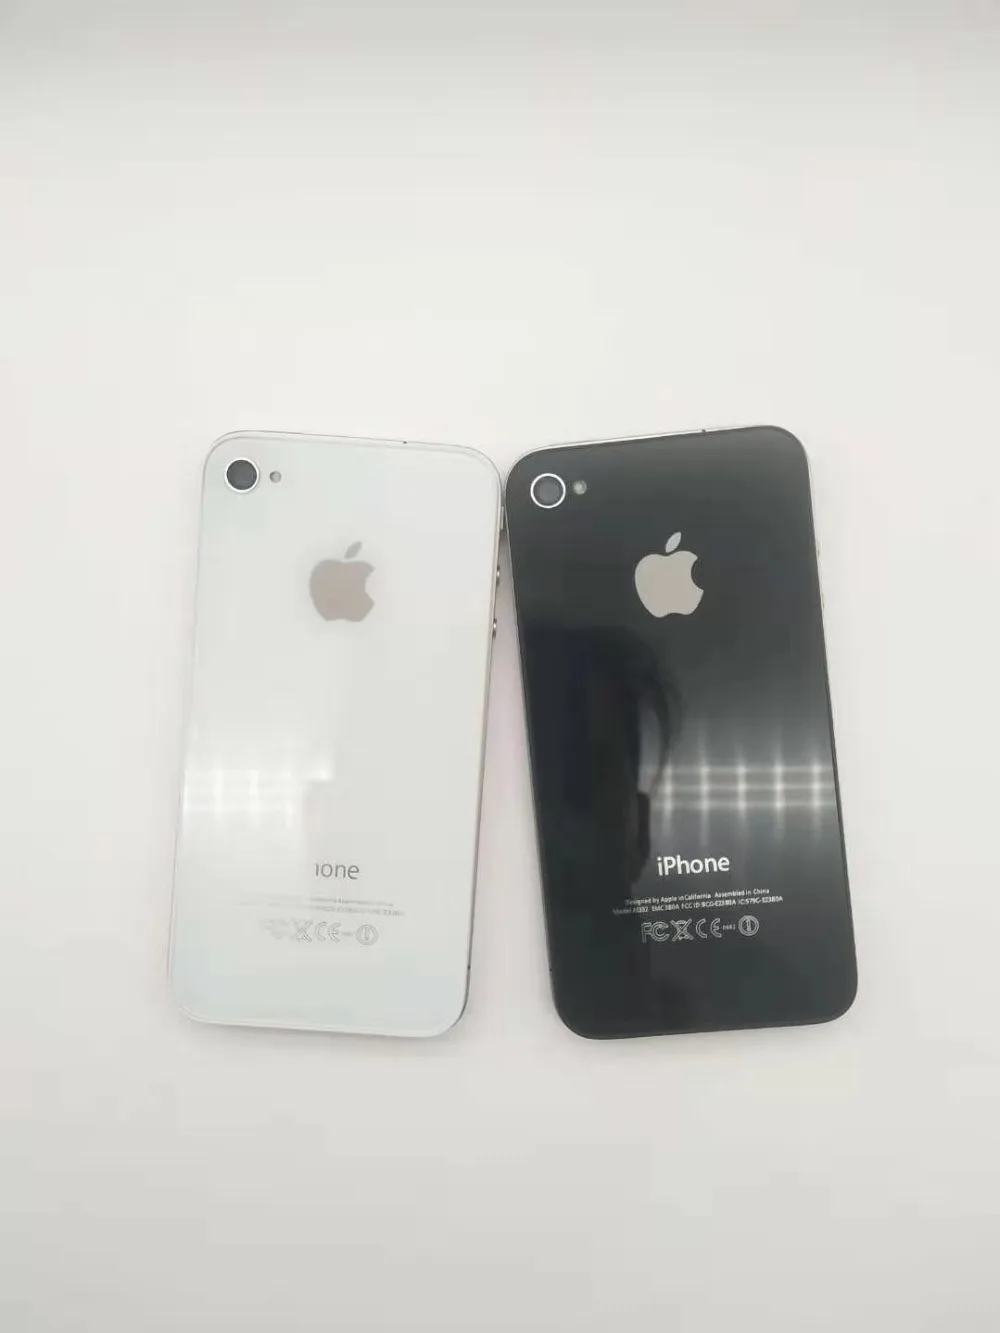 Разблокированный apple iPhone 4 Телефон 8 Гб rom двухъядерный 3,5 дюймов GSM WCDMA 3g wifi gps 5MP камера используется мобильный телефон apple